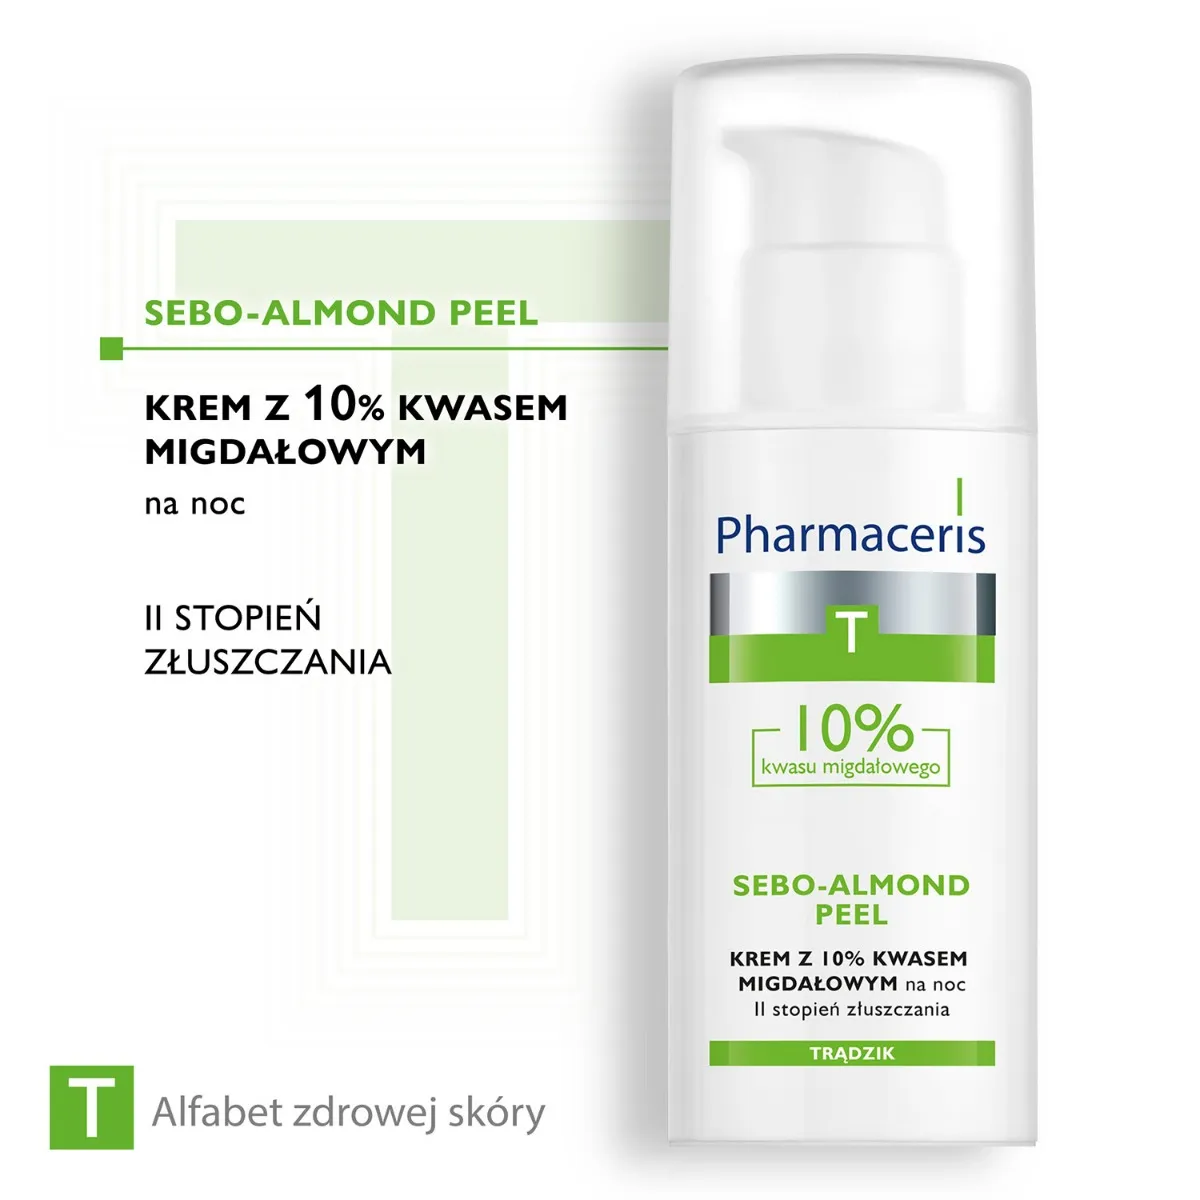 Pharmaceris T Sebo-Almond Peel, krem z 10% kwasem migdałowym na noc, II stopień złuszczenia, 50 ml 